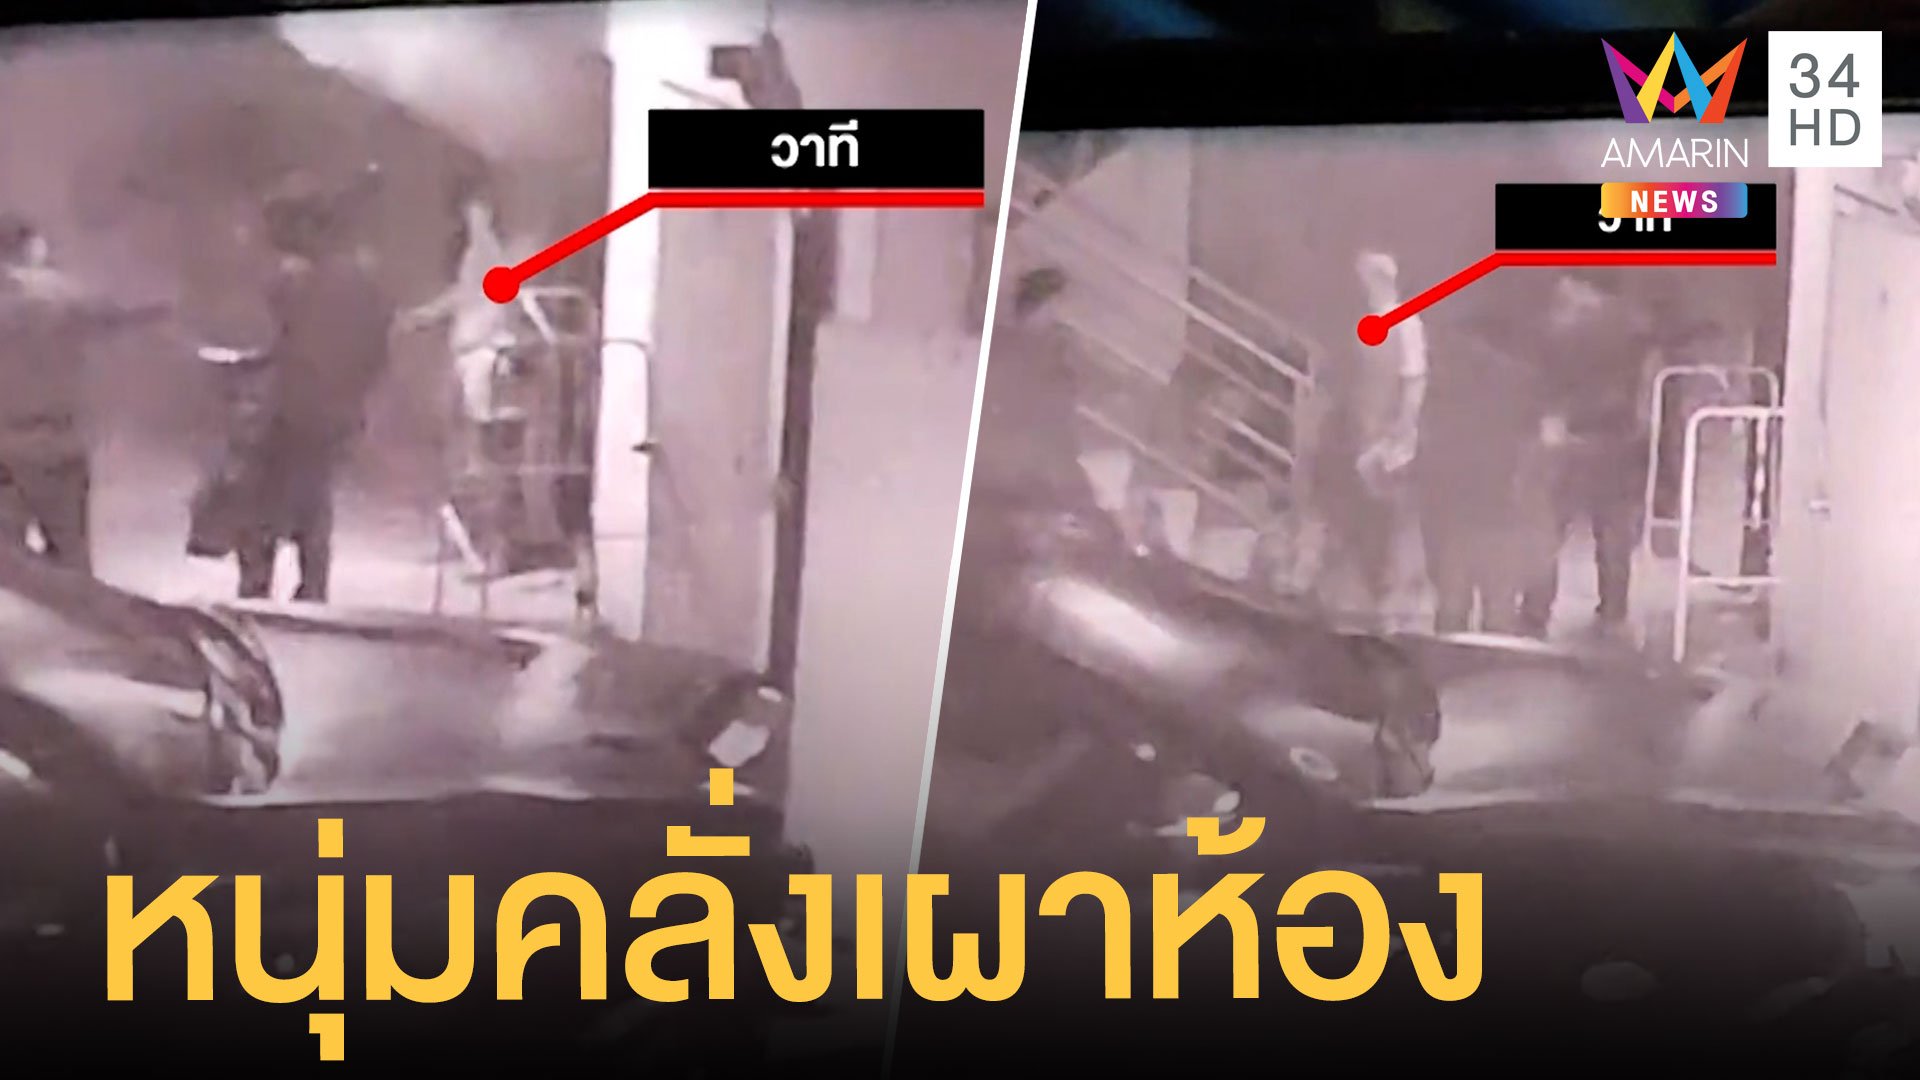 หนุ่มจุดไฟเผาตัวเองในห้อง วิ่งให้รถชนสาหัส | ข่าวเที่ยงอมรินทร์ | 2 ต.ค. 64 | AMARIN TVHD34